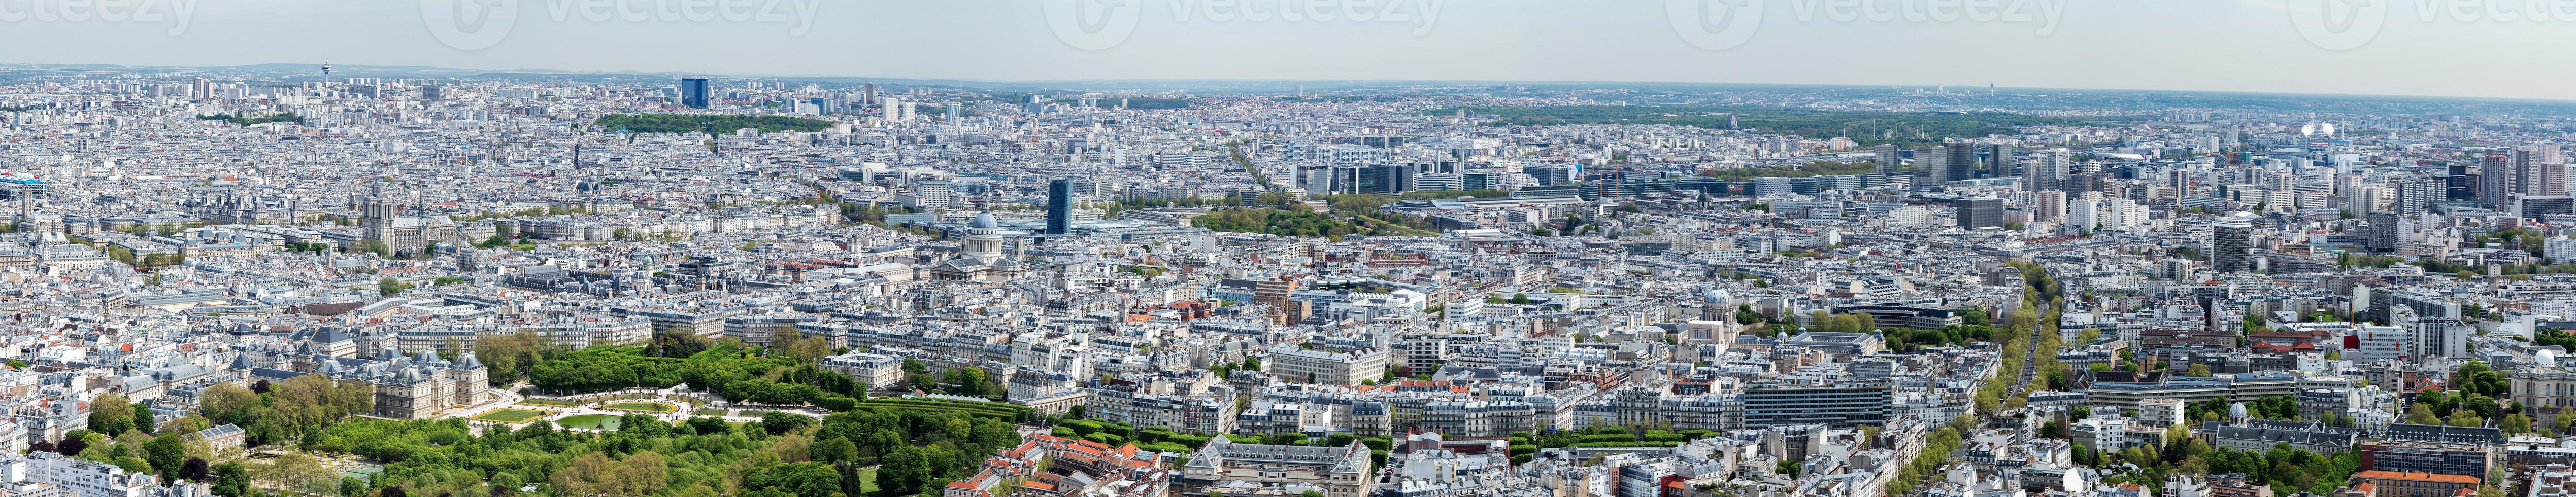 luftbildpanorama von paris stadtbild foto